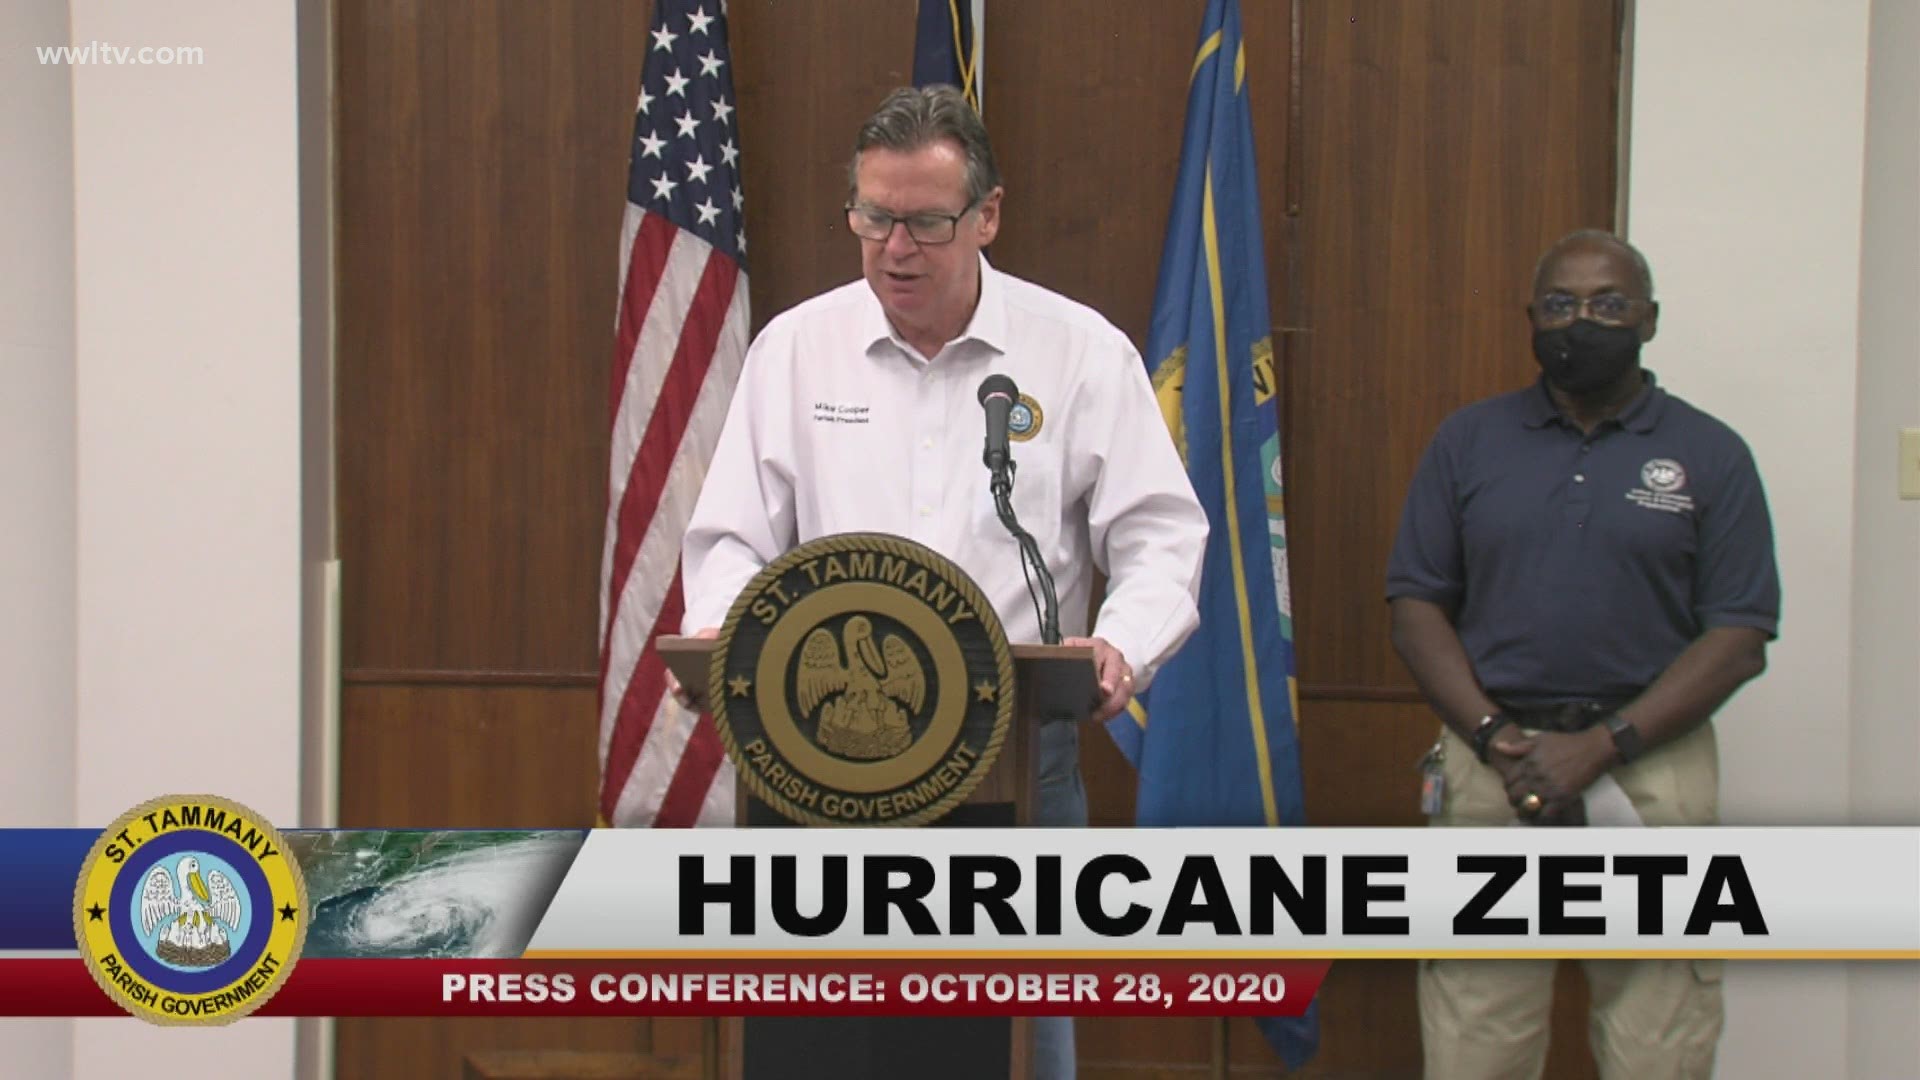 St. Tammany Parish - Hurricane Zeta Update